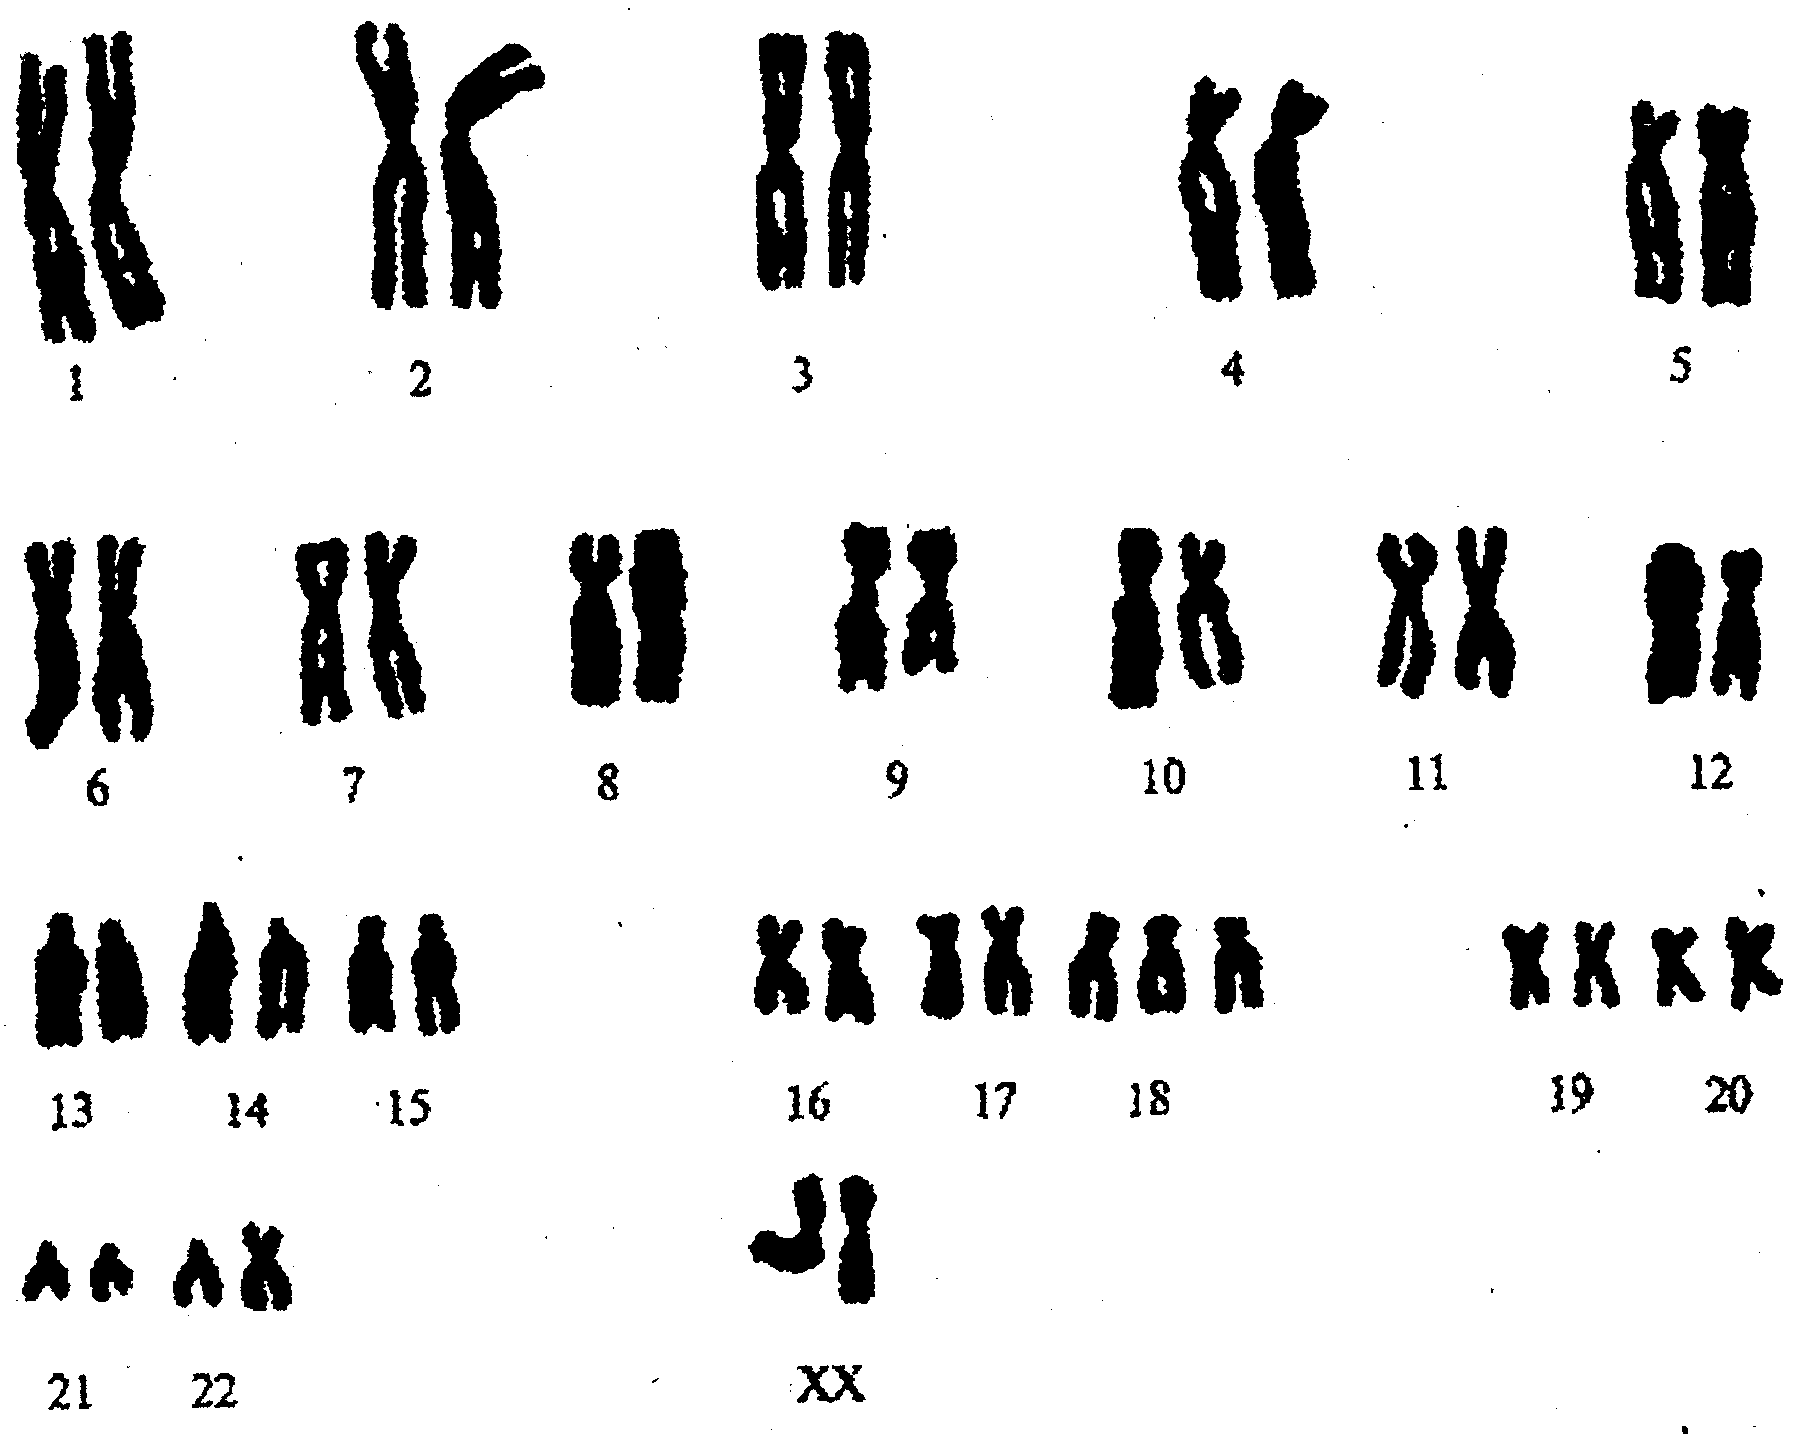 Пересадка хромосом